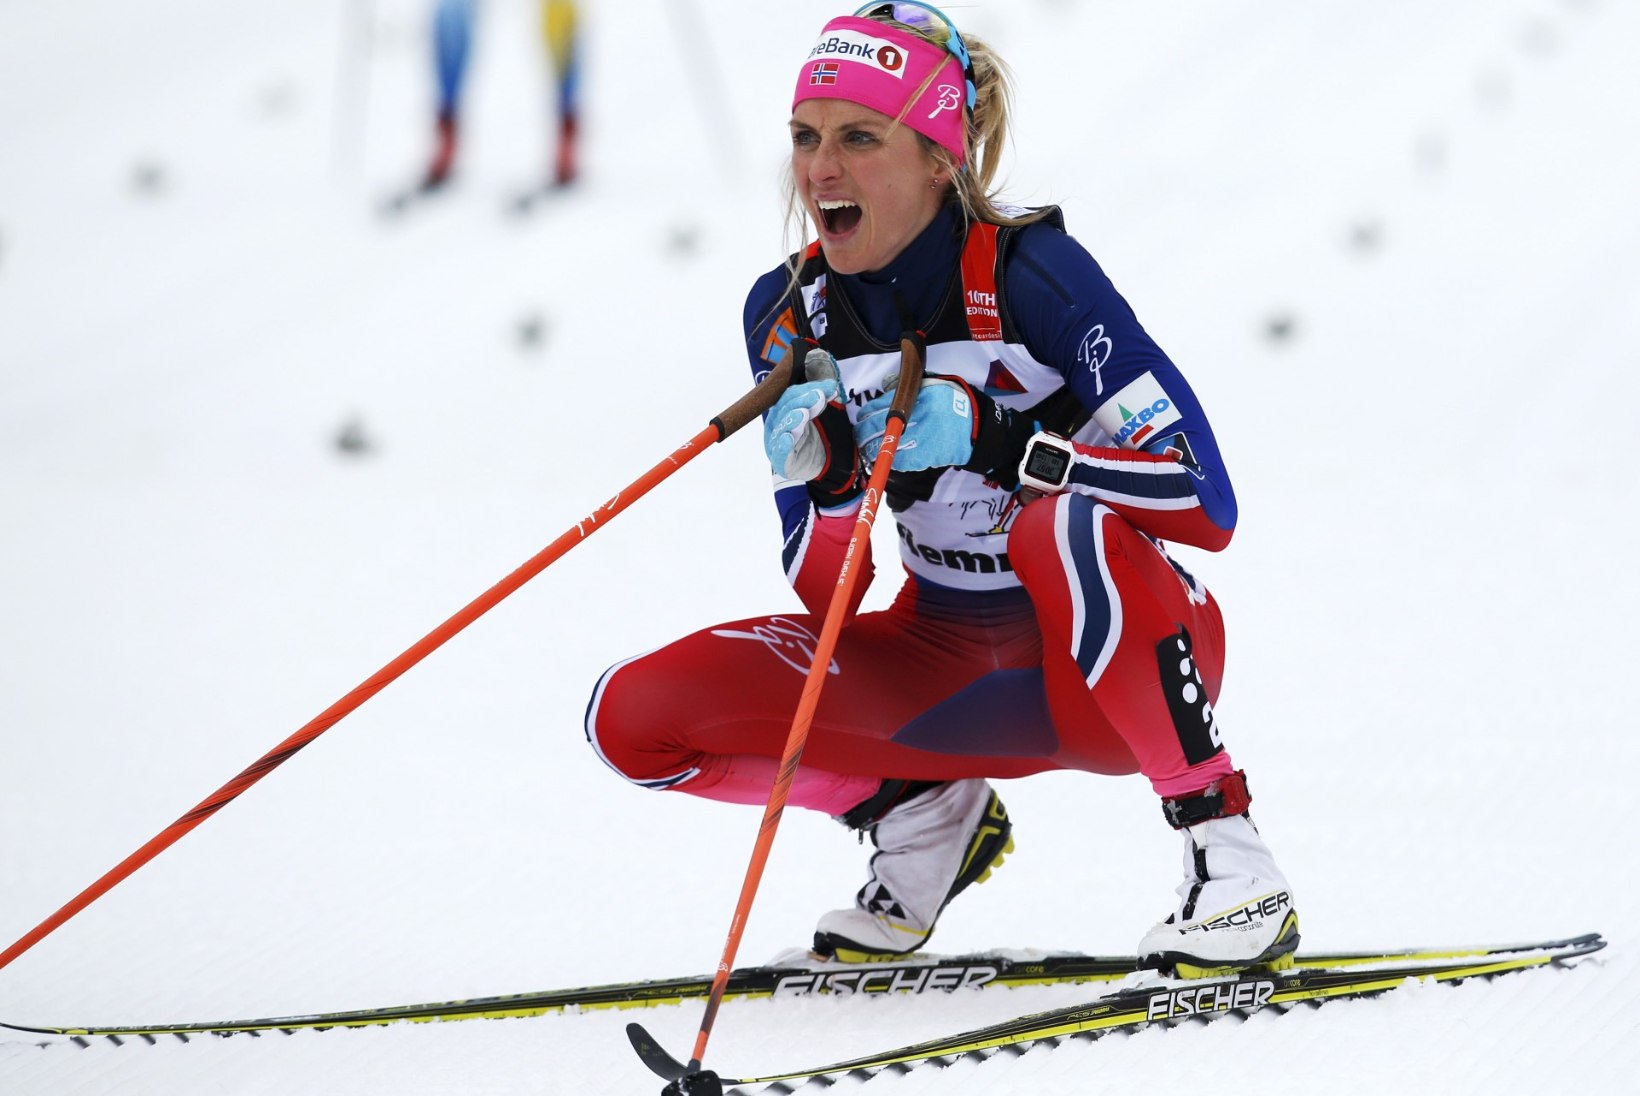 JÕHKER JÕUDEMONSTRATSIOON! Therese Johaug möödus Östbergist lõputõusul kui postist ja võitis Tour de Ski